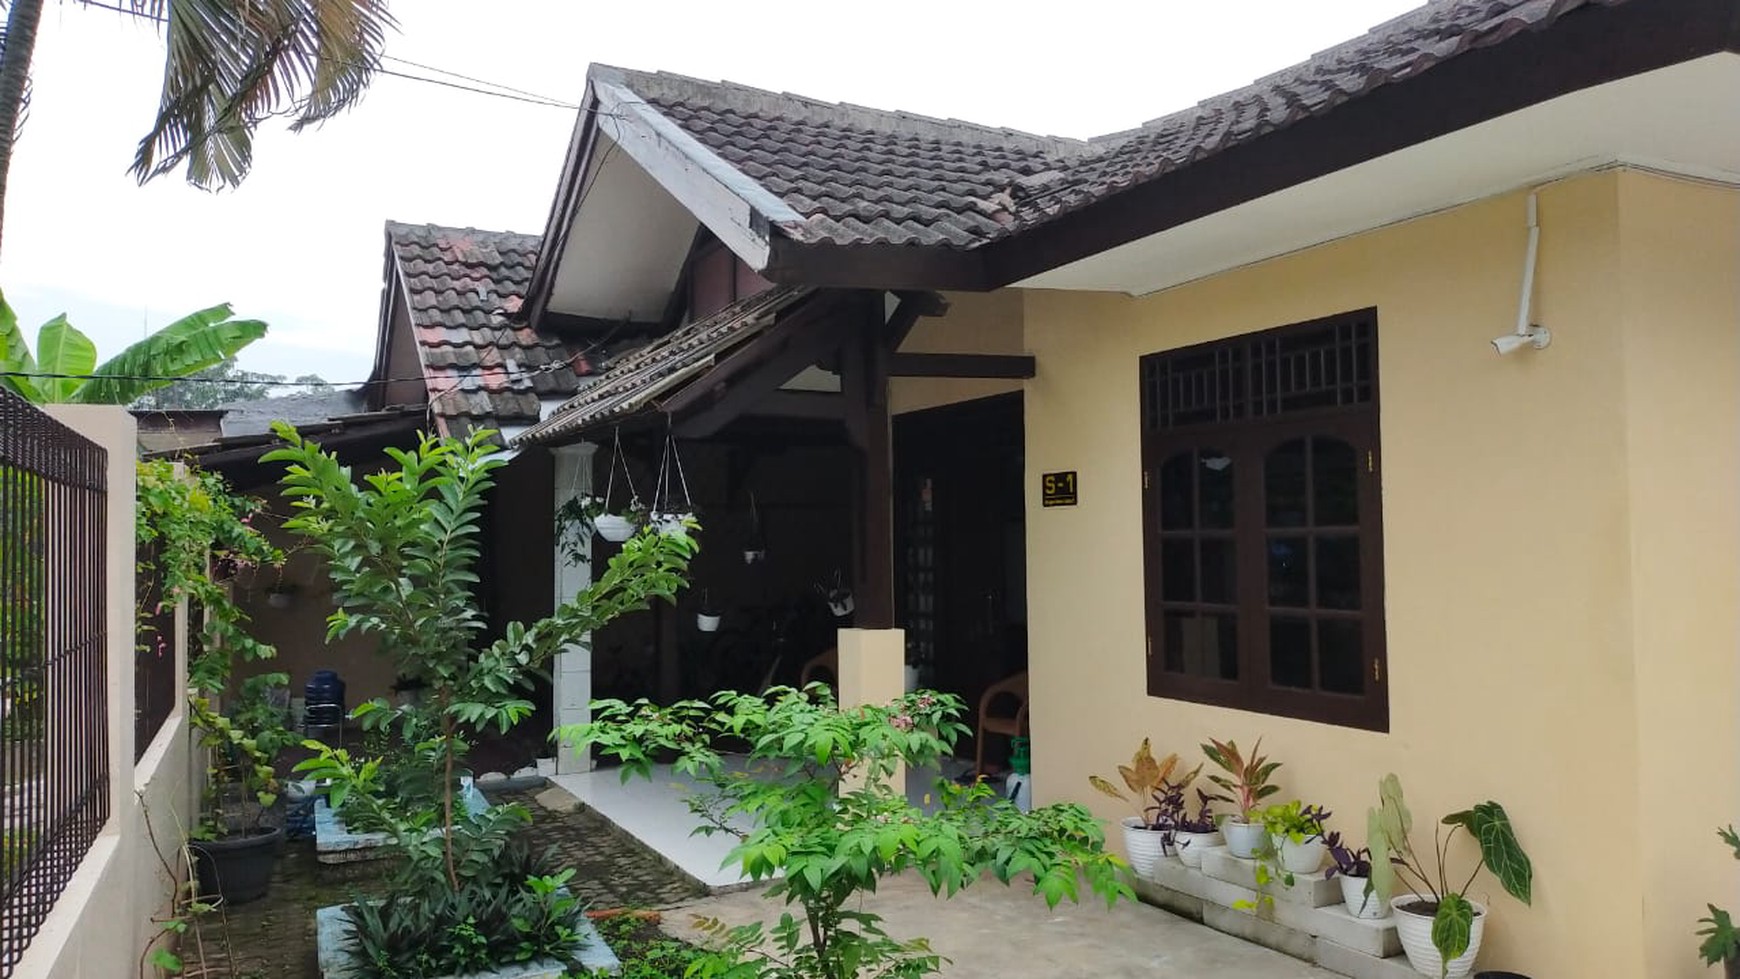 Rumah Tangerang Area - Dalam Komplek Perumahan Bangun Reksa Indah Tangerang - Aman Nyaman - Dijual Cepat & Murah - Cocok untuk Usaha Rumah Kost 